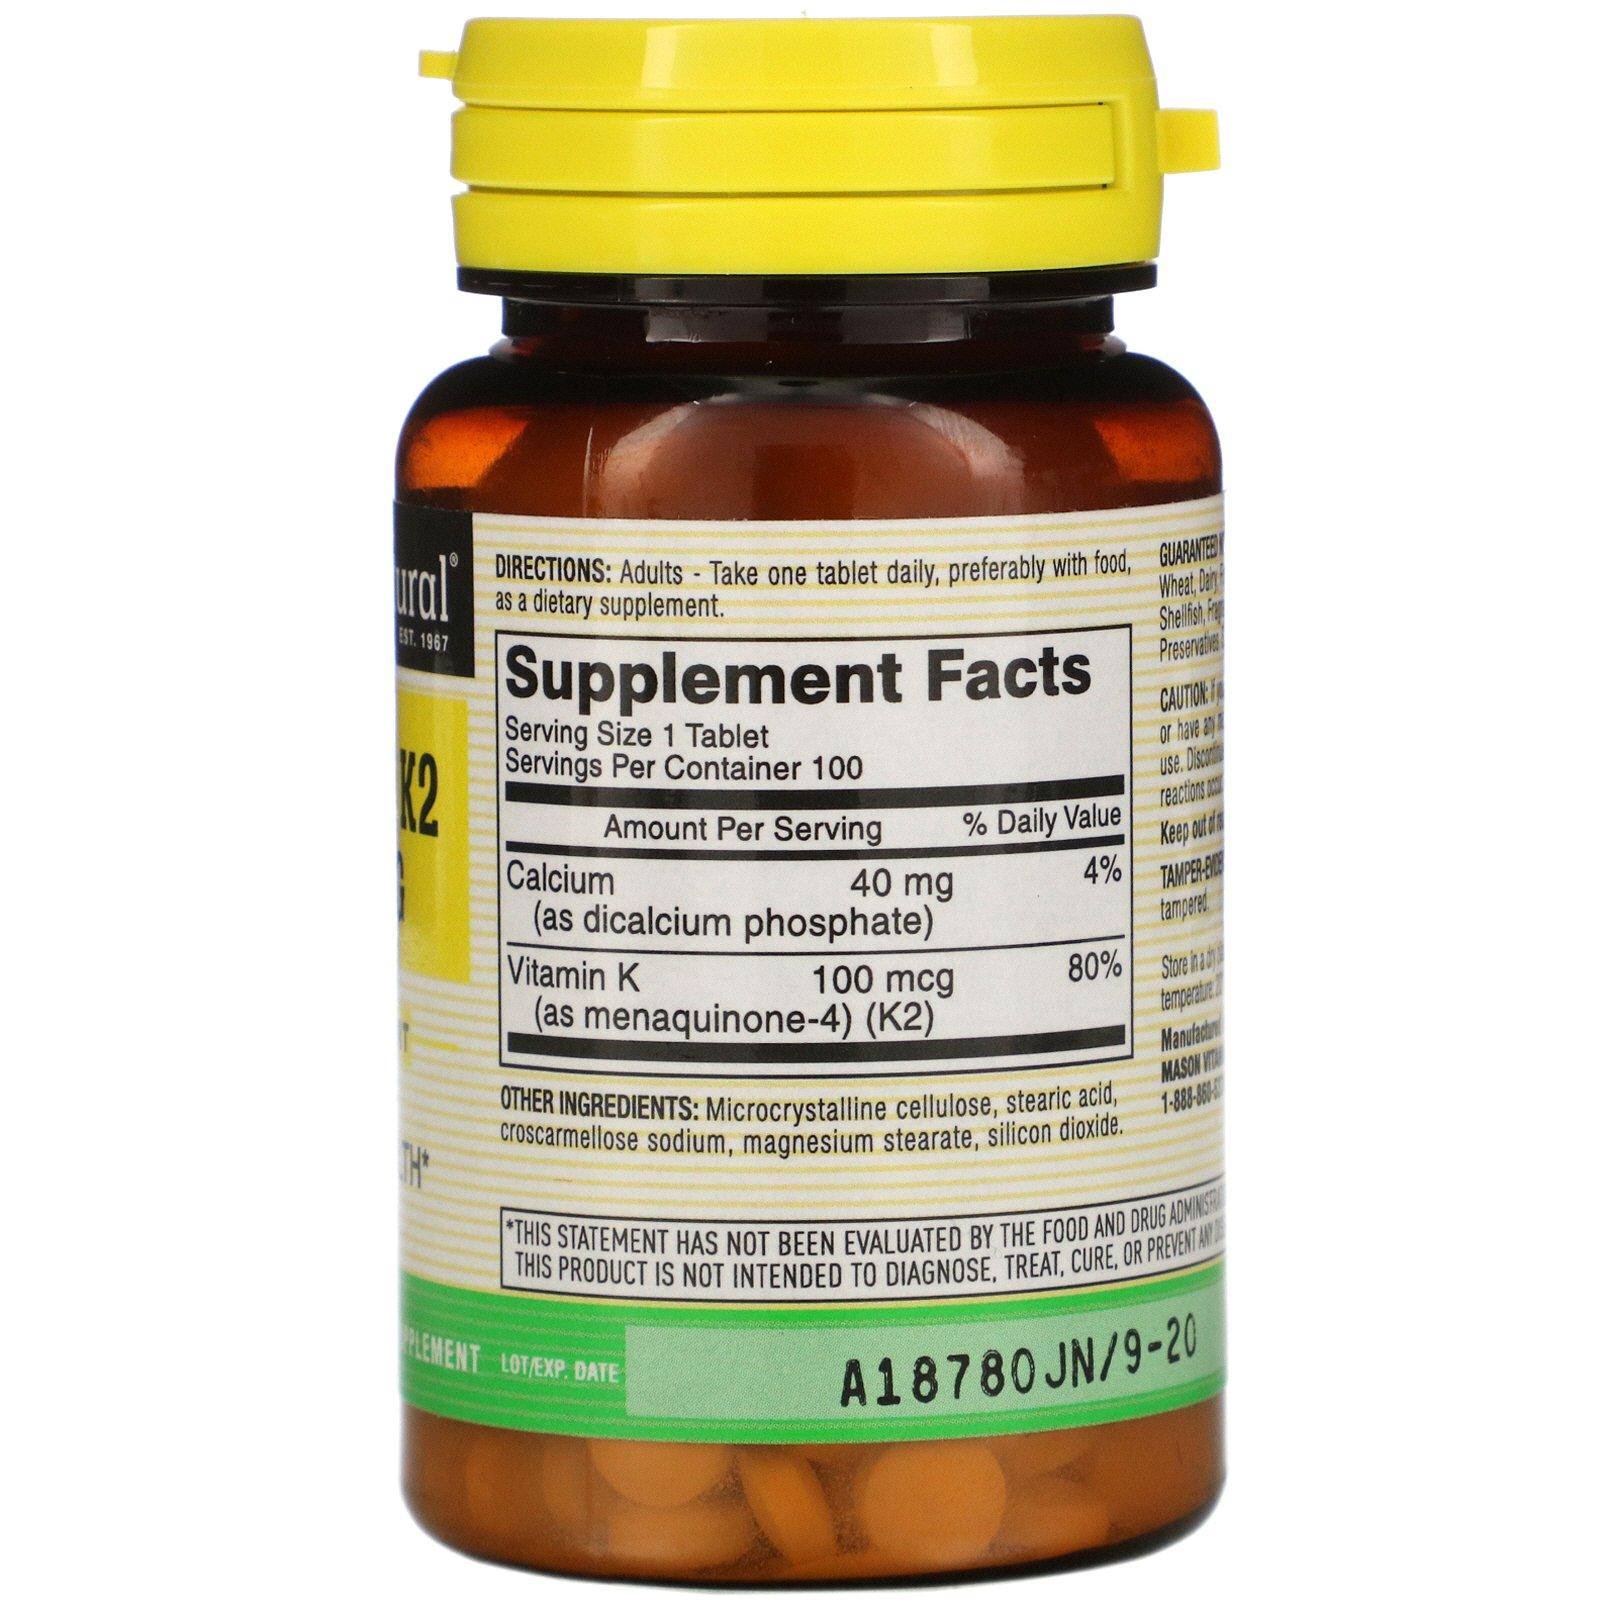 Mason Natural - Vitamin K2 100 mcg - 100 Tablets